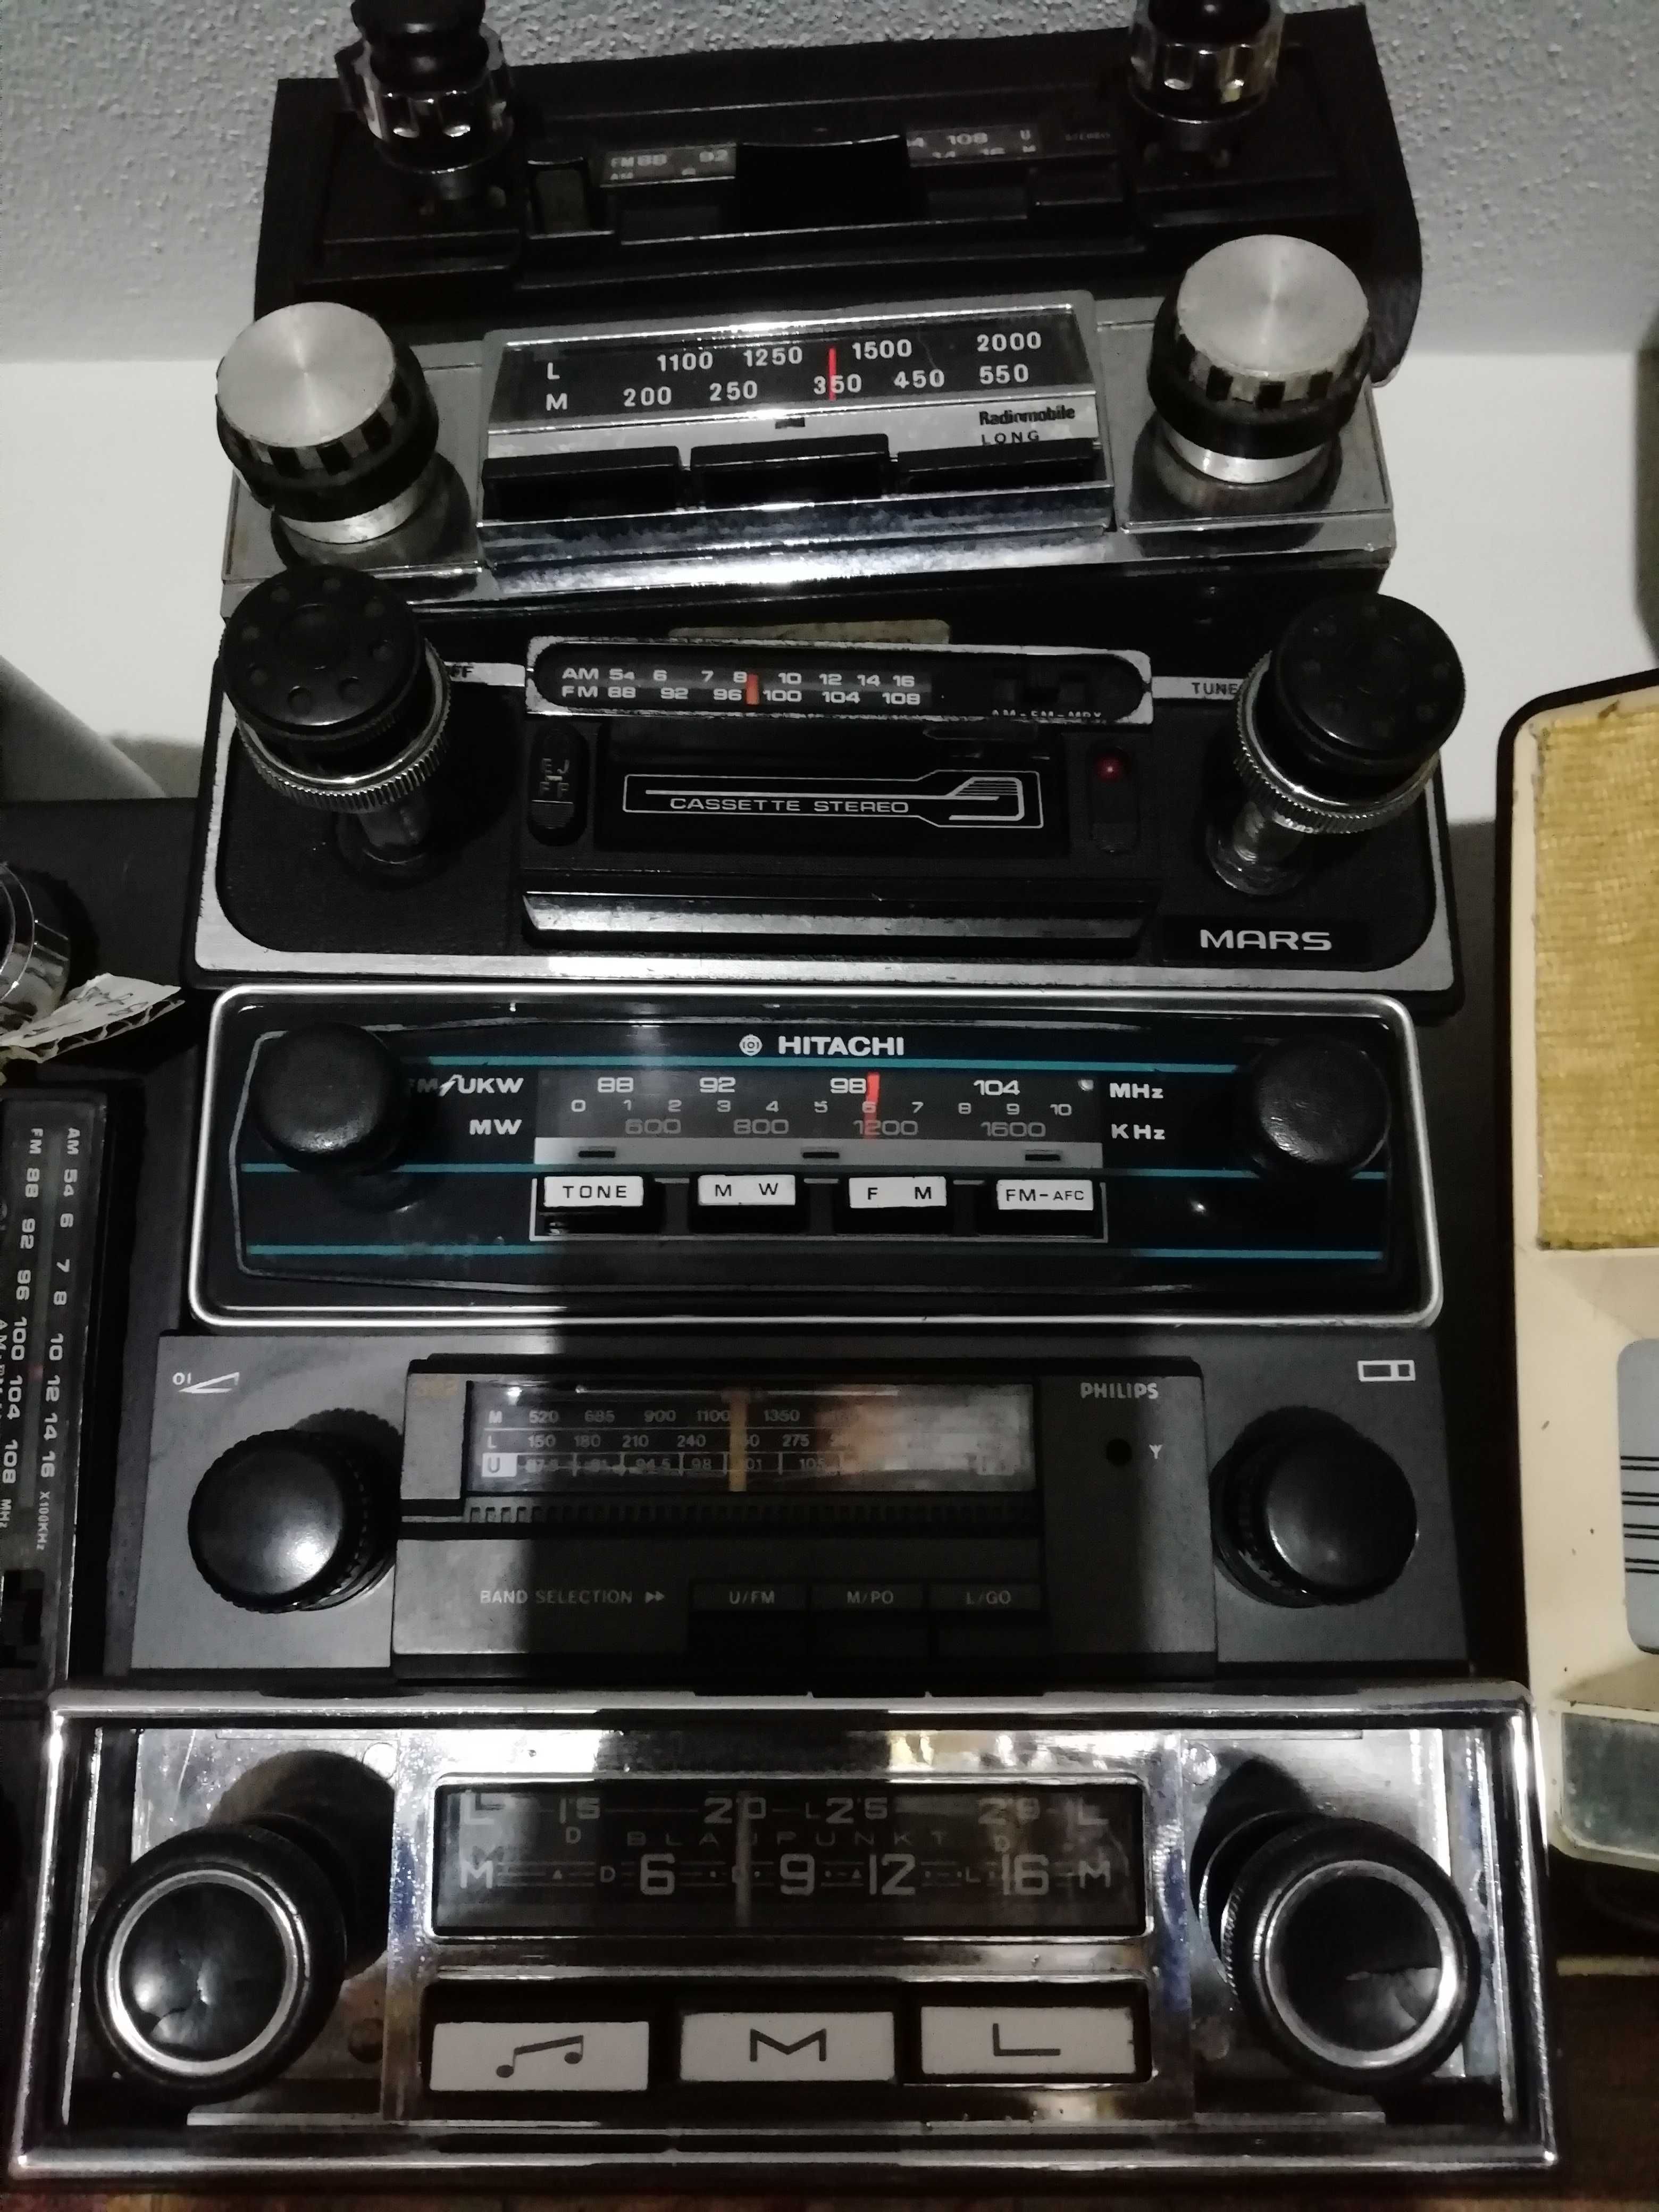 Lote de rádios antigos para coleção